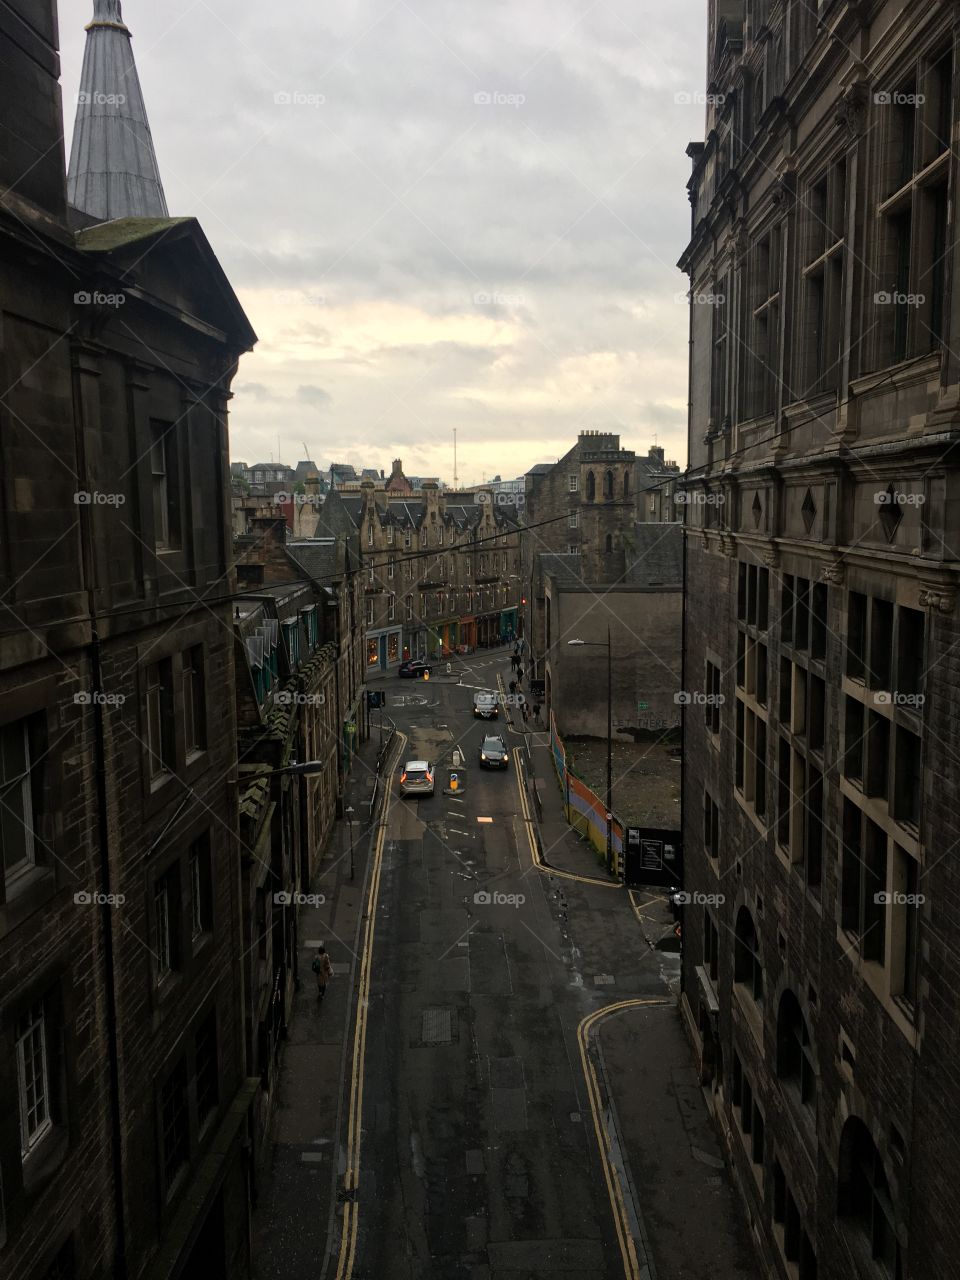 Overhead bridge in Edinburgh Scotland 